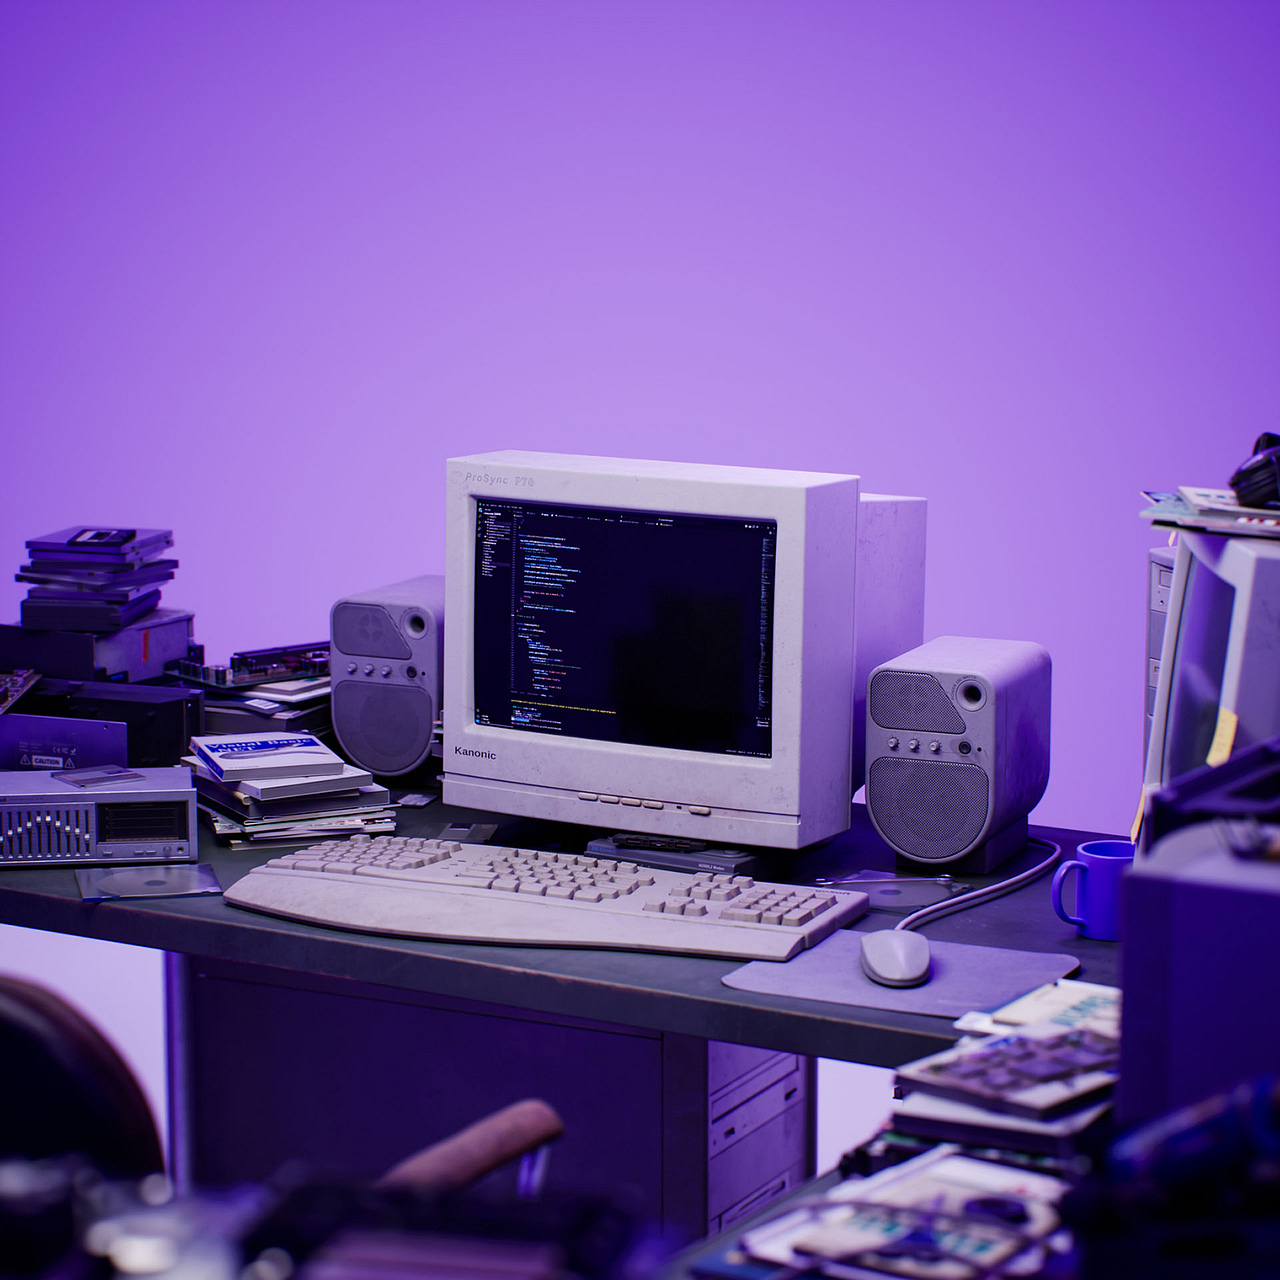 Im Bild sieht man einen alten Computer aus den späten 90er Jahren zwischen verschiedenen Utensilien aus dem Bereich der Software-Entwicklung.